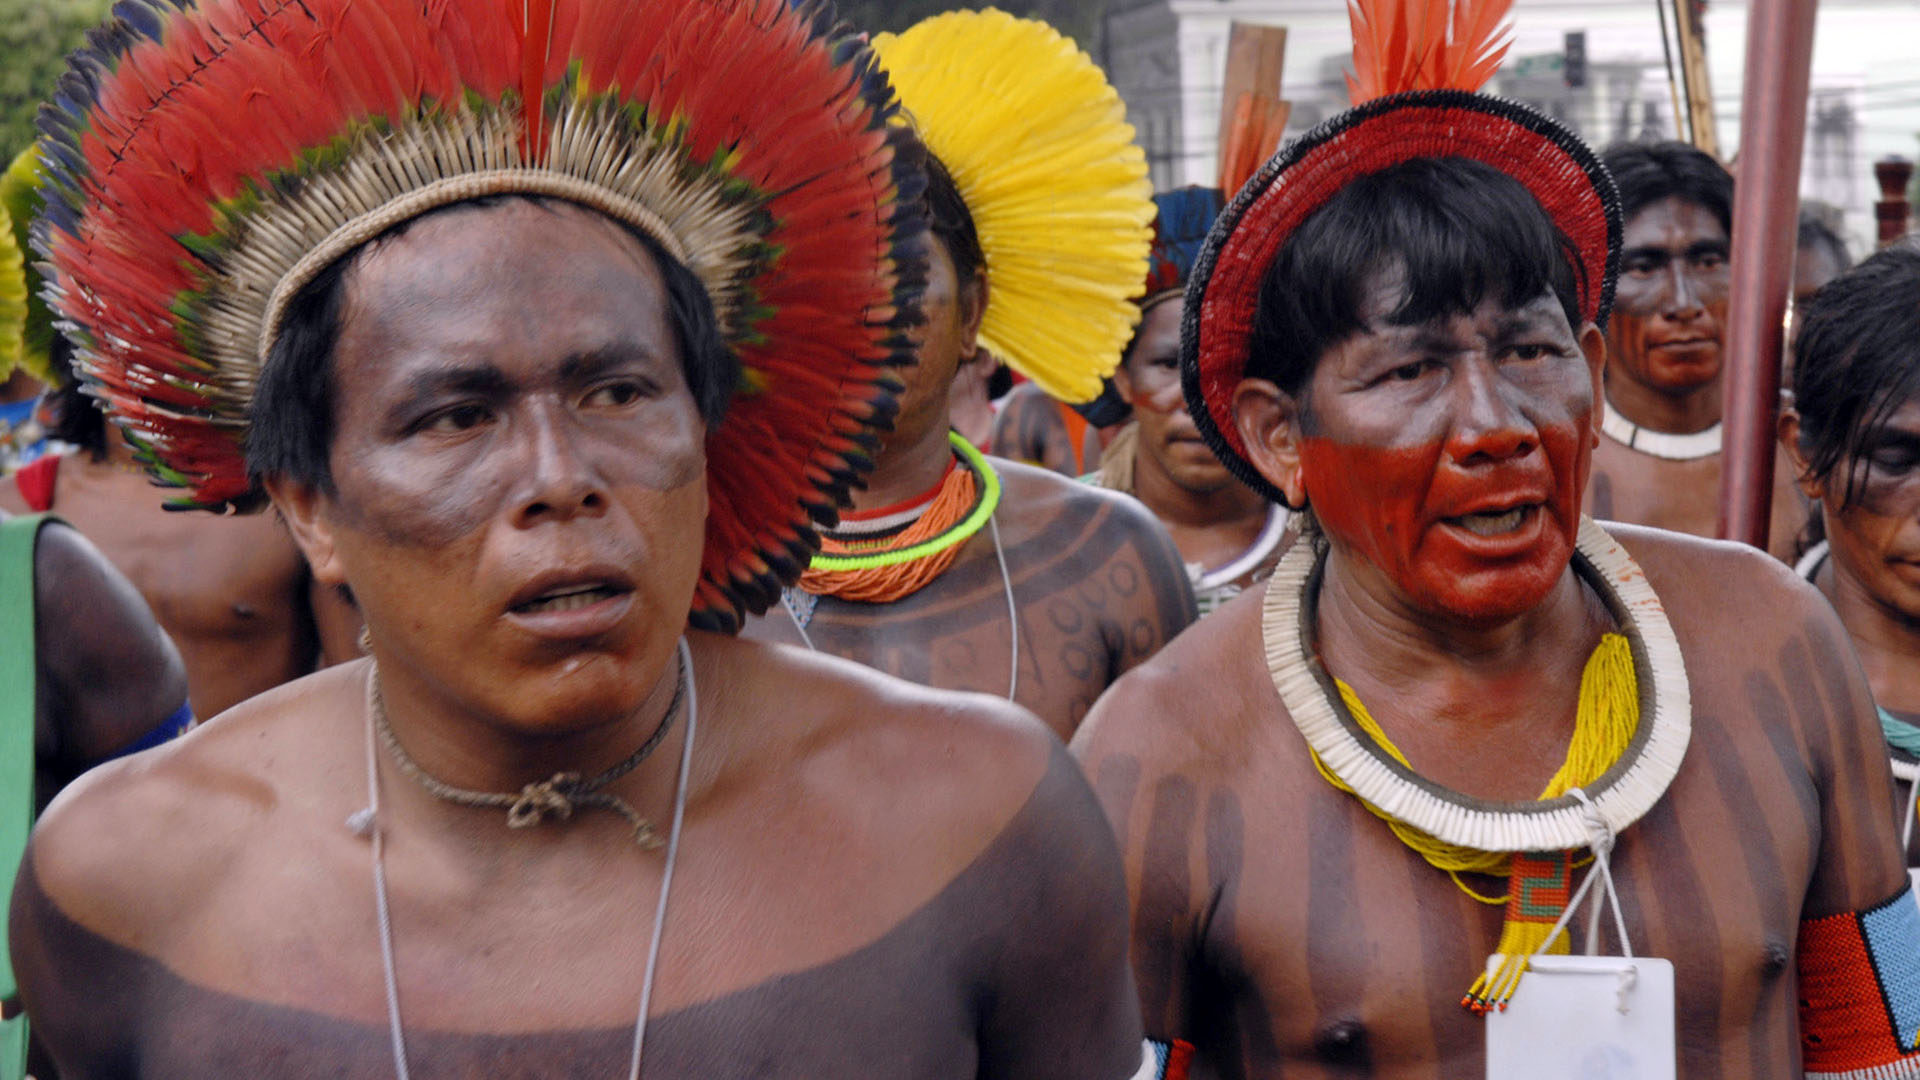 Brésil: Les indiens Kaiowa font partie des populations indigènes bénéficiant des droits ancestraux à la terre,  inscrits dans la Constitution fédérale de 1988 (Photo: Jean-Claude Gerez)